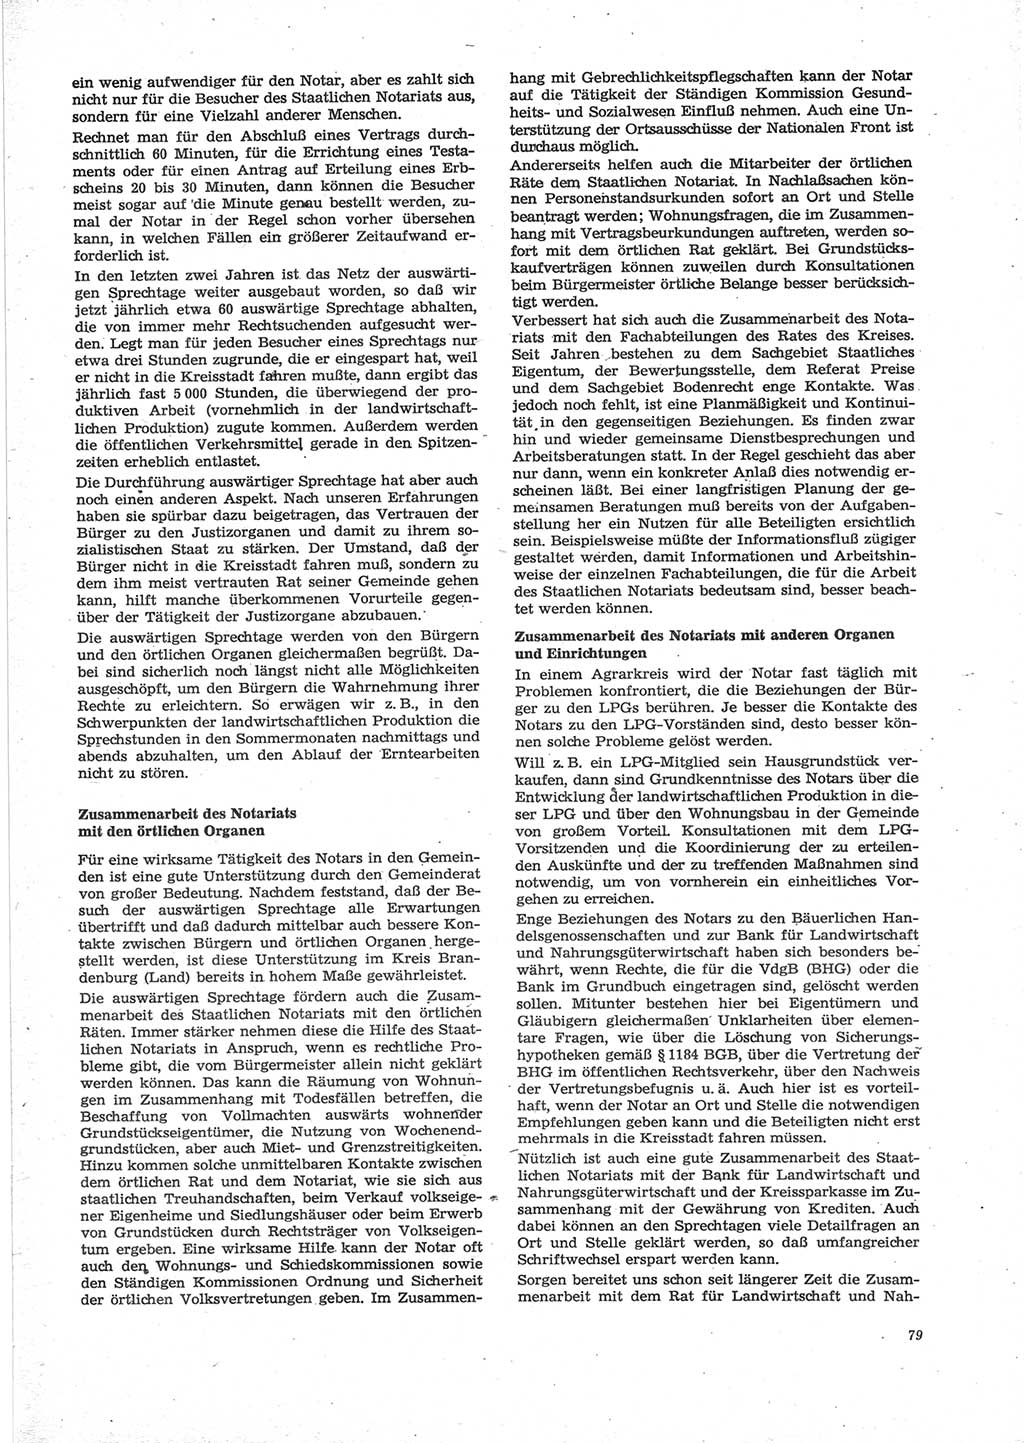 Neue Justiz (NJ), Zeitschrift für Recht und Rechtswissenschaft [Deutsche Demokratische Republik (DDR)], 28. Jahrgang 1974, Seite 79 (NJ DDR 1974, S. 79)